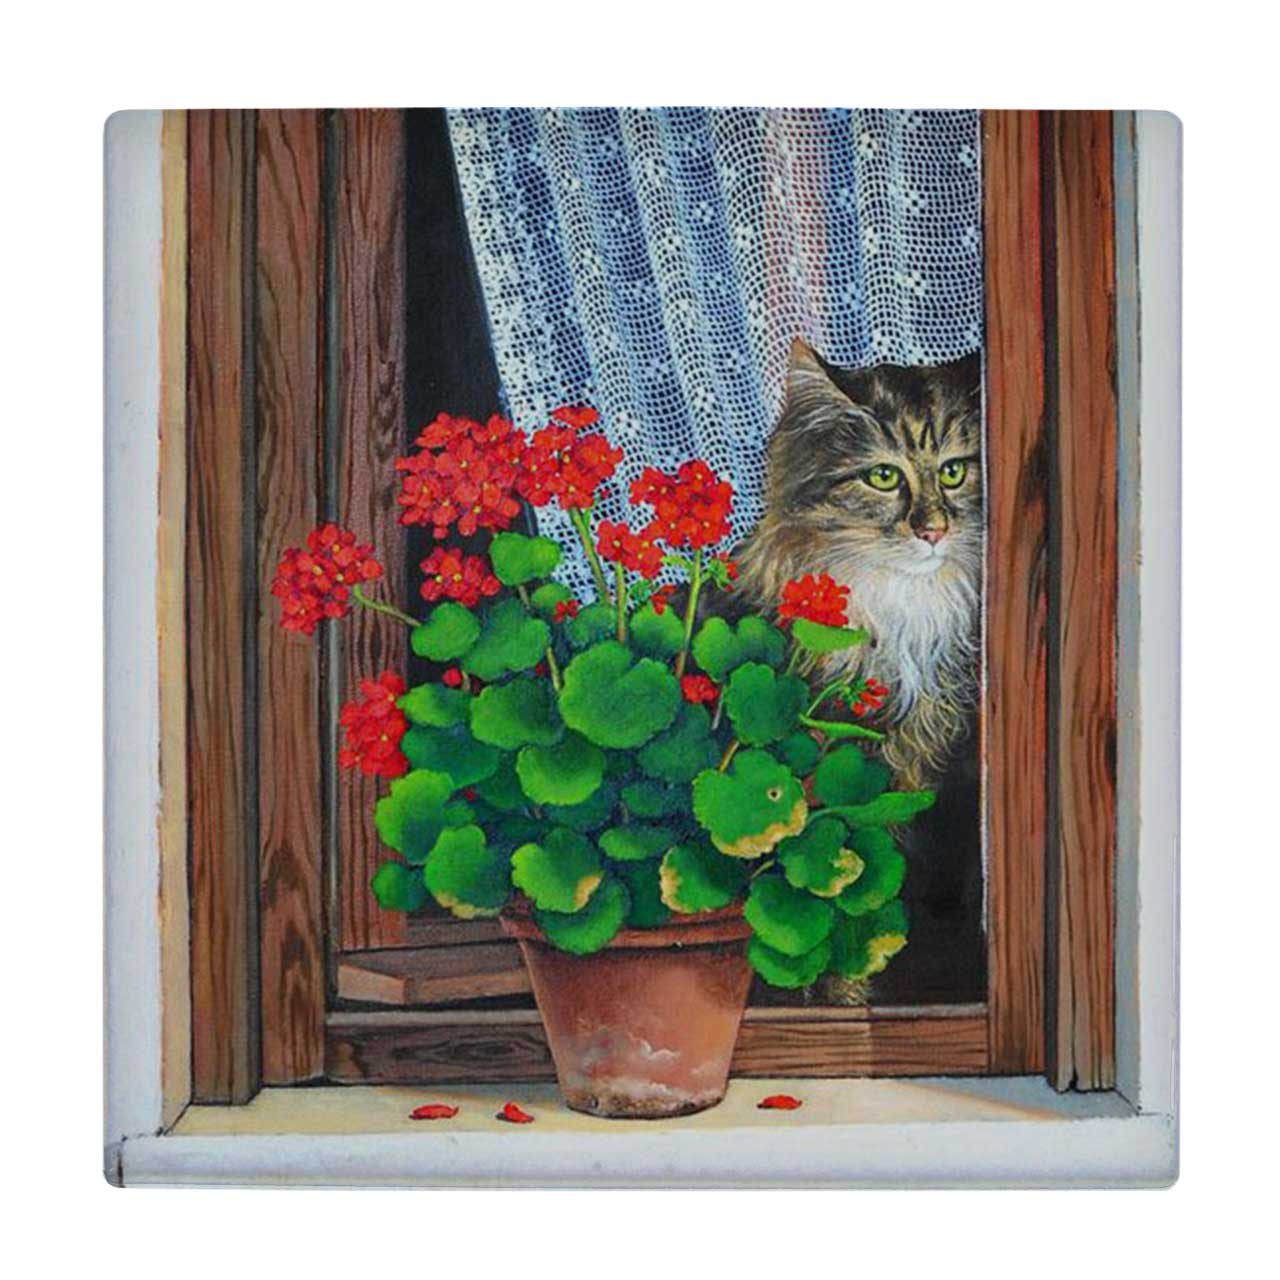 زیر لیوانی طرح نقاشی گلدان شمعدانی و گربه کد 6096817_5267